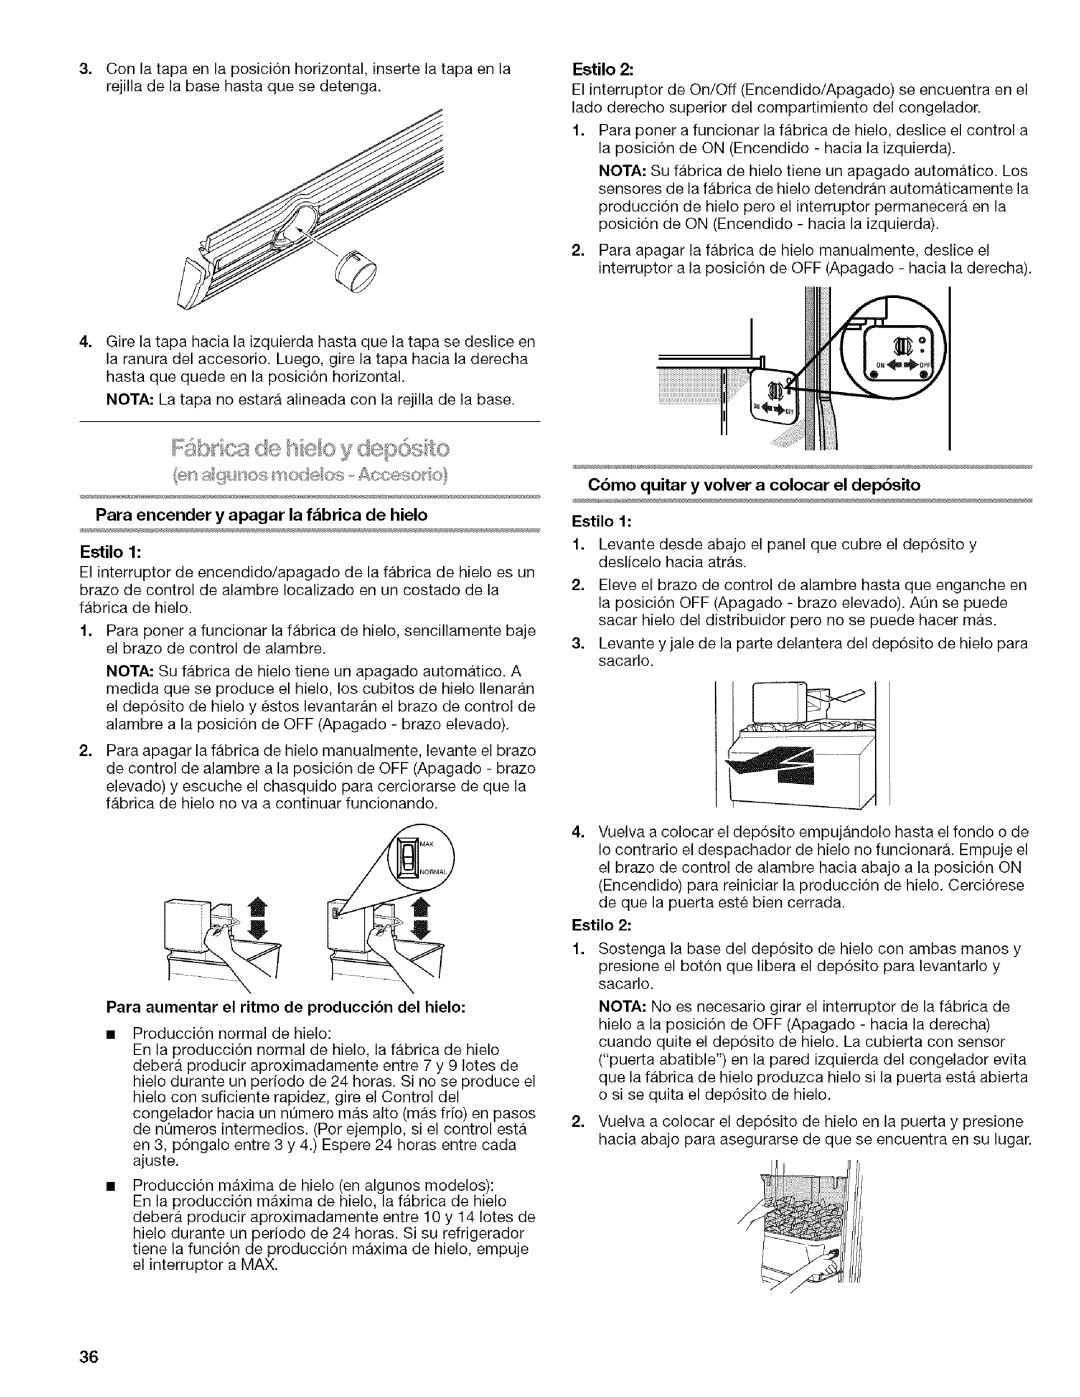 Kenmore WIOI67097A manual Para encender y apagar la f_brica de hielo Estilo, Para aumentar el ritmo de producci6n del hielo 